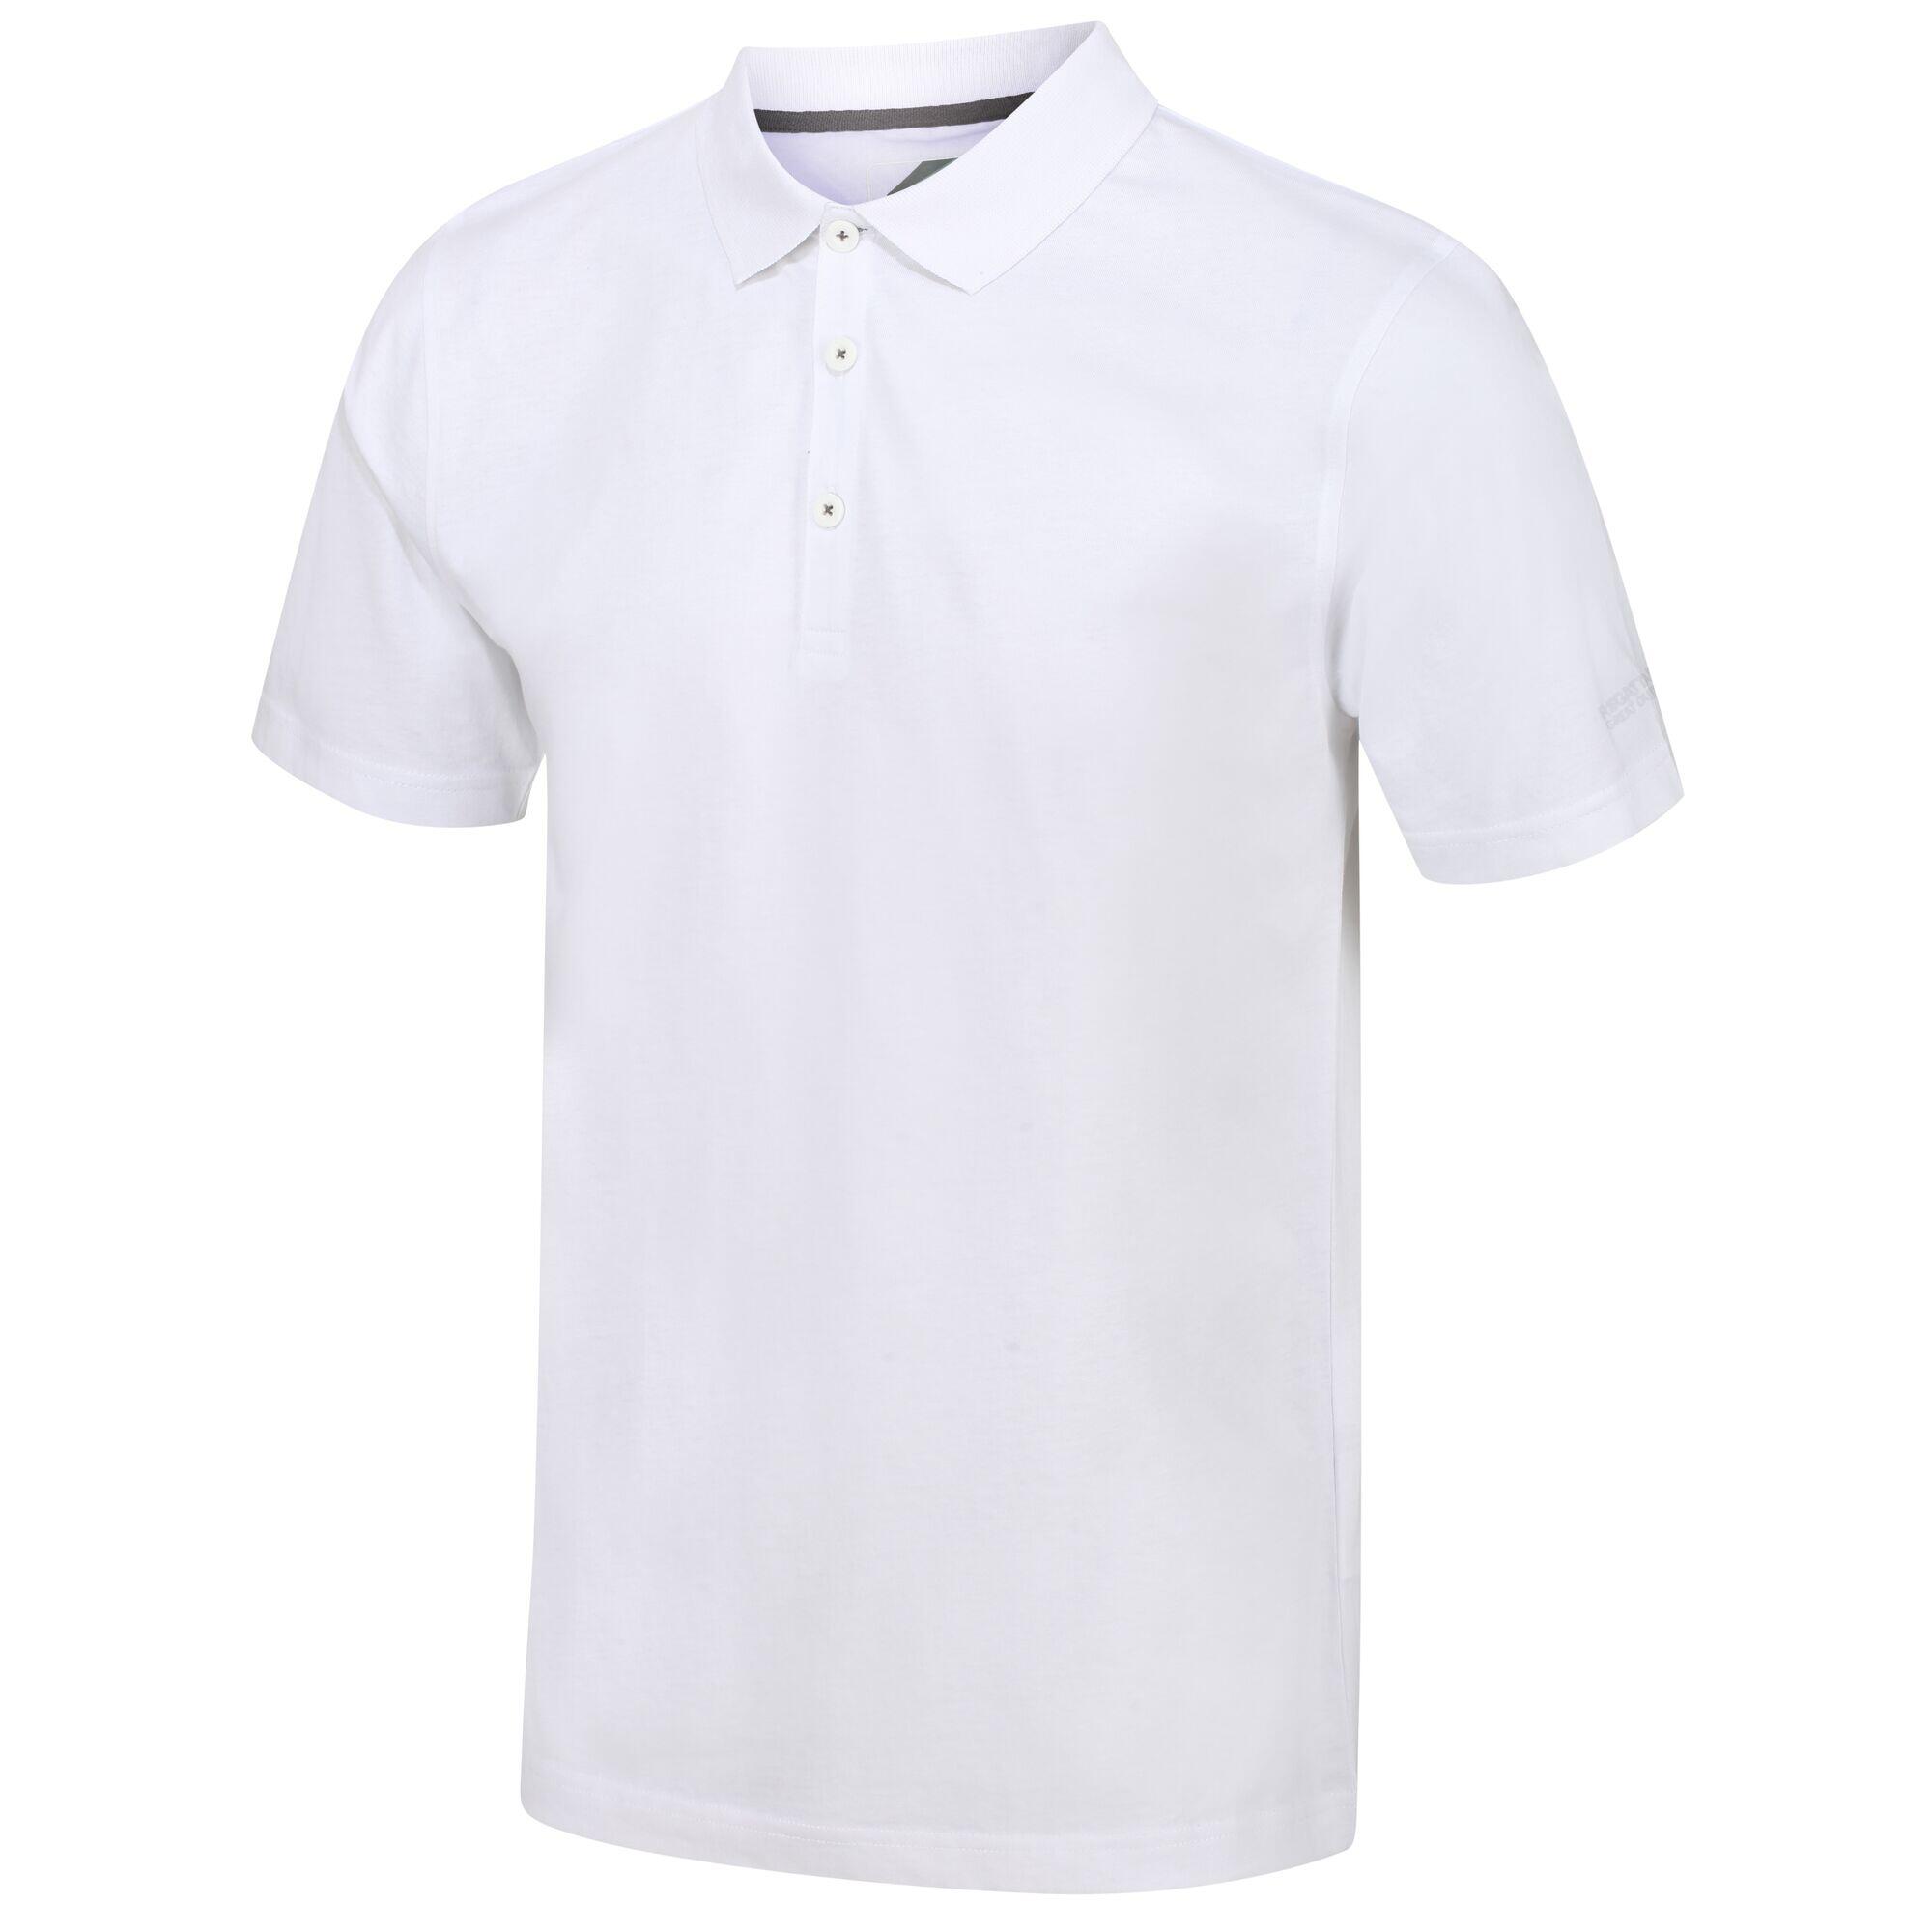 Sinton Men's Fitness Short Sleeve Polo Shirt - White 5/6